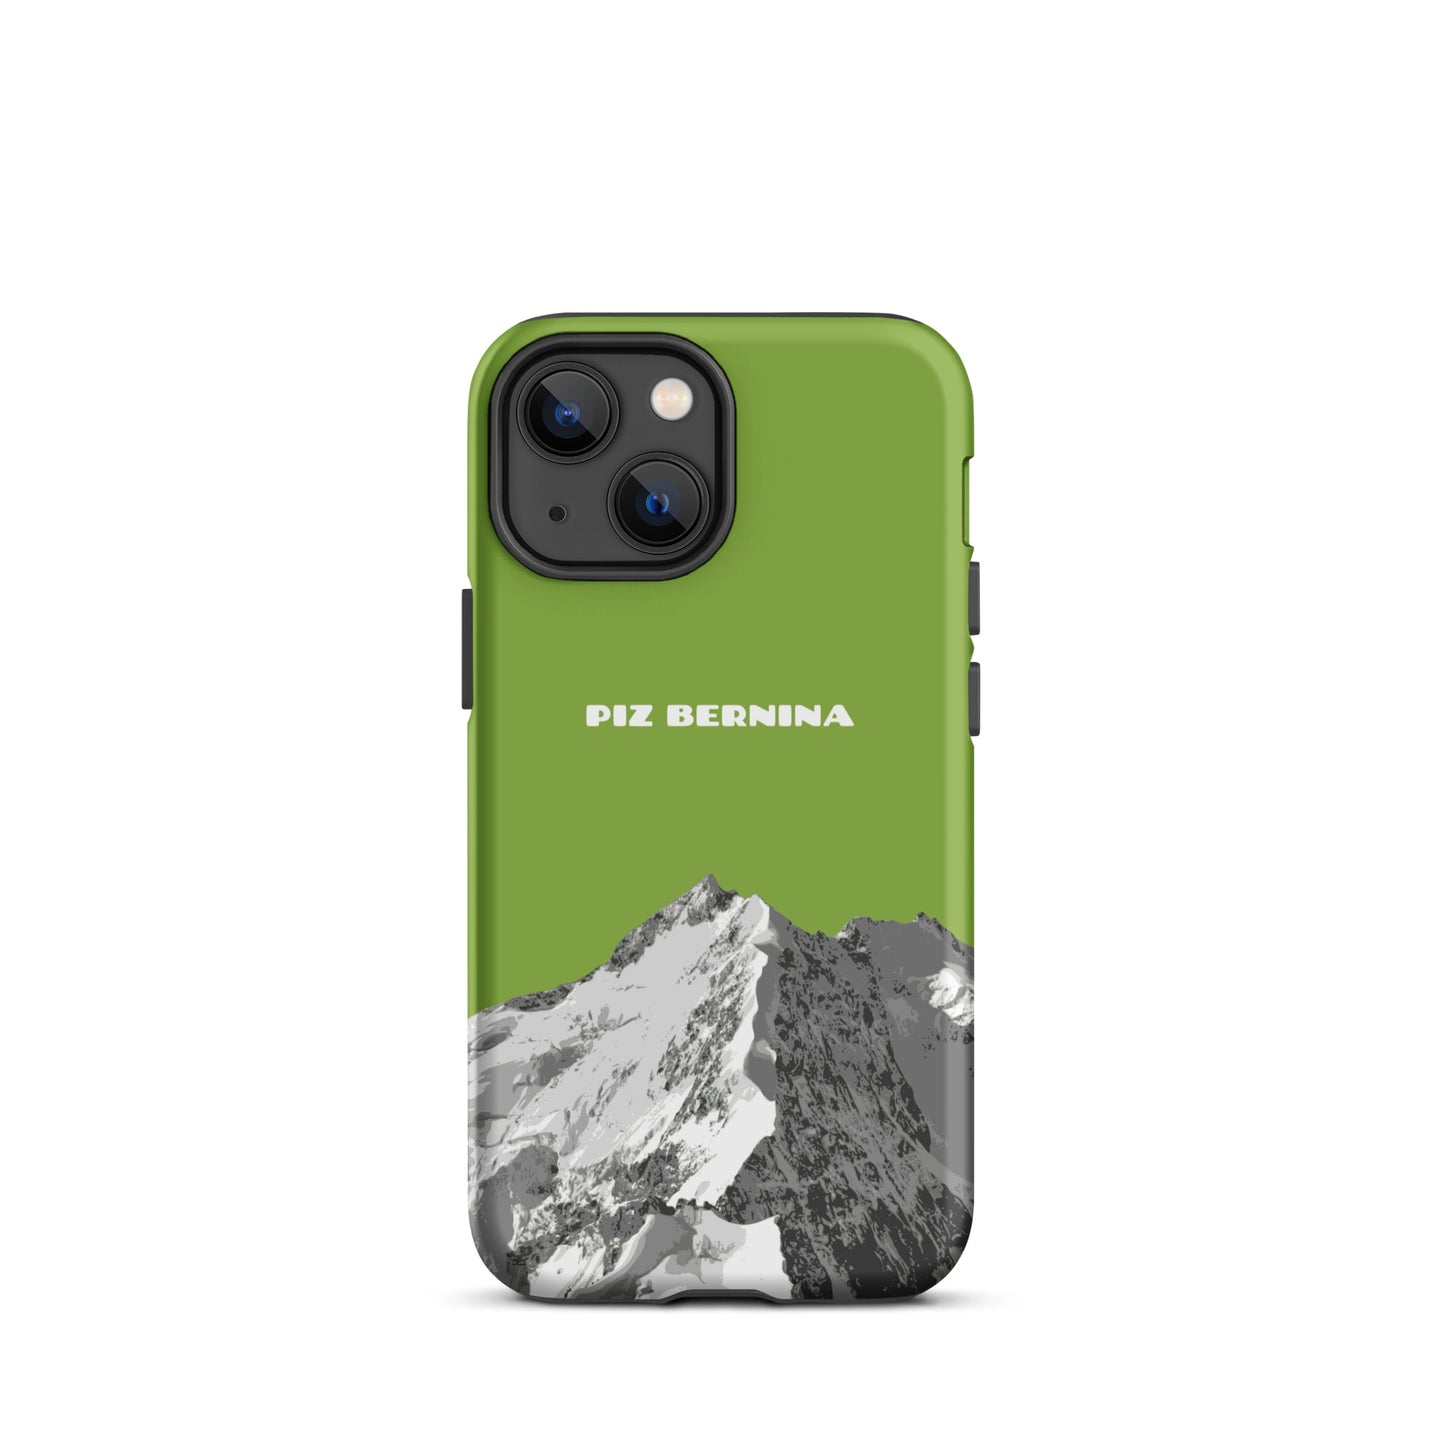 Hülle für das iPhone 13 Mini von Apple in der Farbe Gelbgrün, dass den Piz Bernina in Graubünden zeigt.